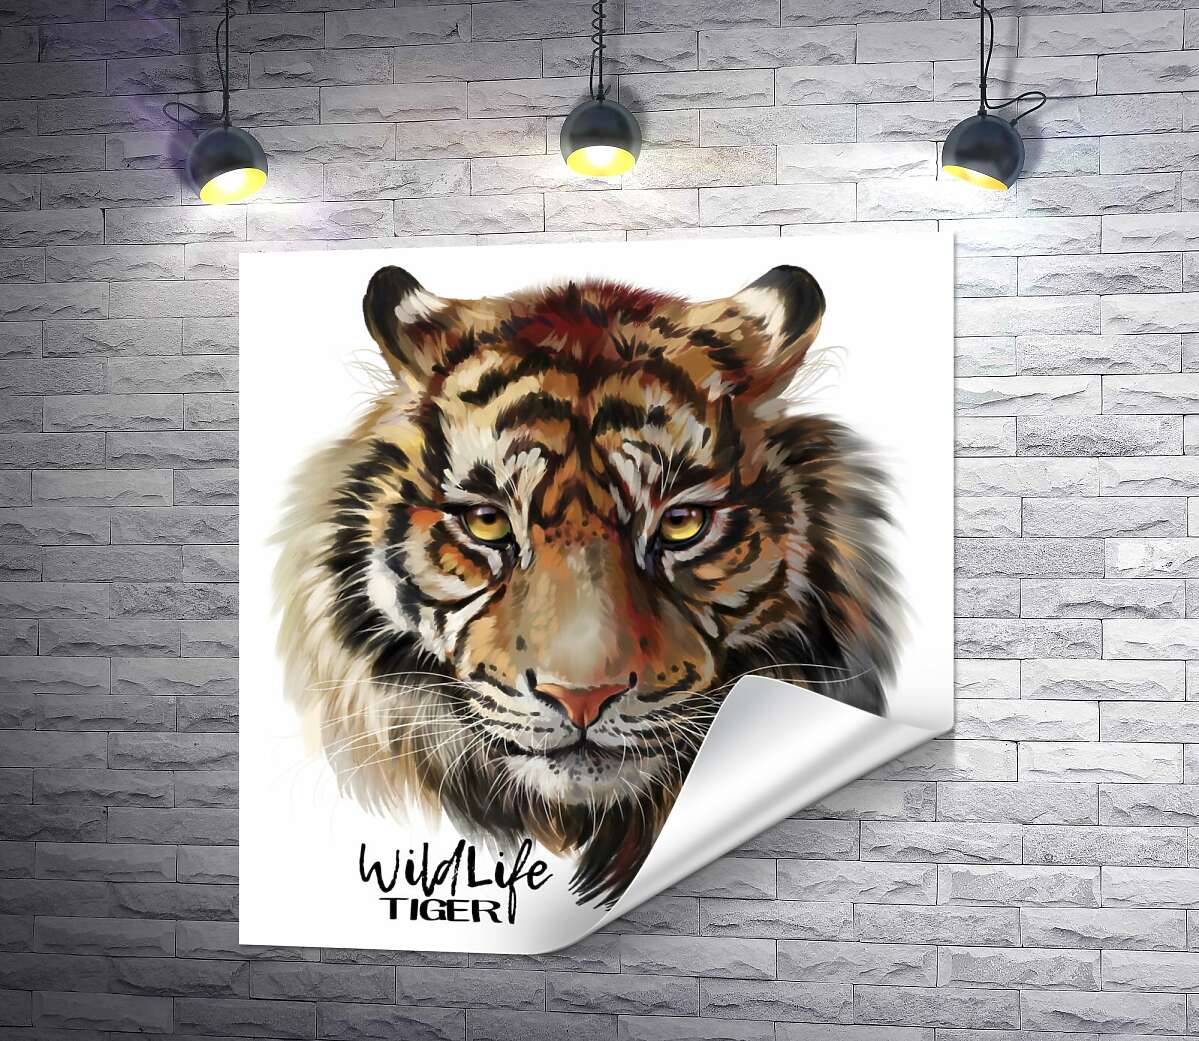 друк Пронизливий погляд тигра поряд з написом "wild life tiger"